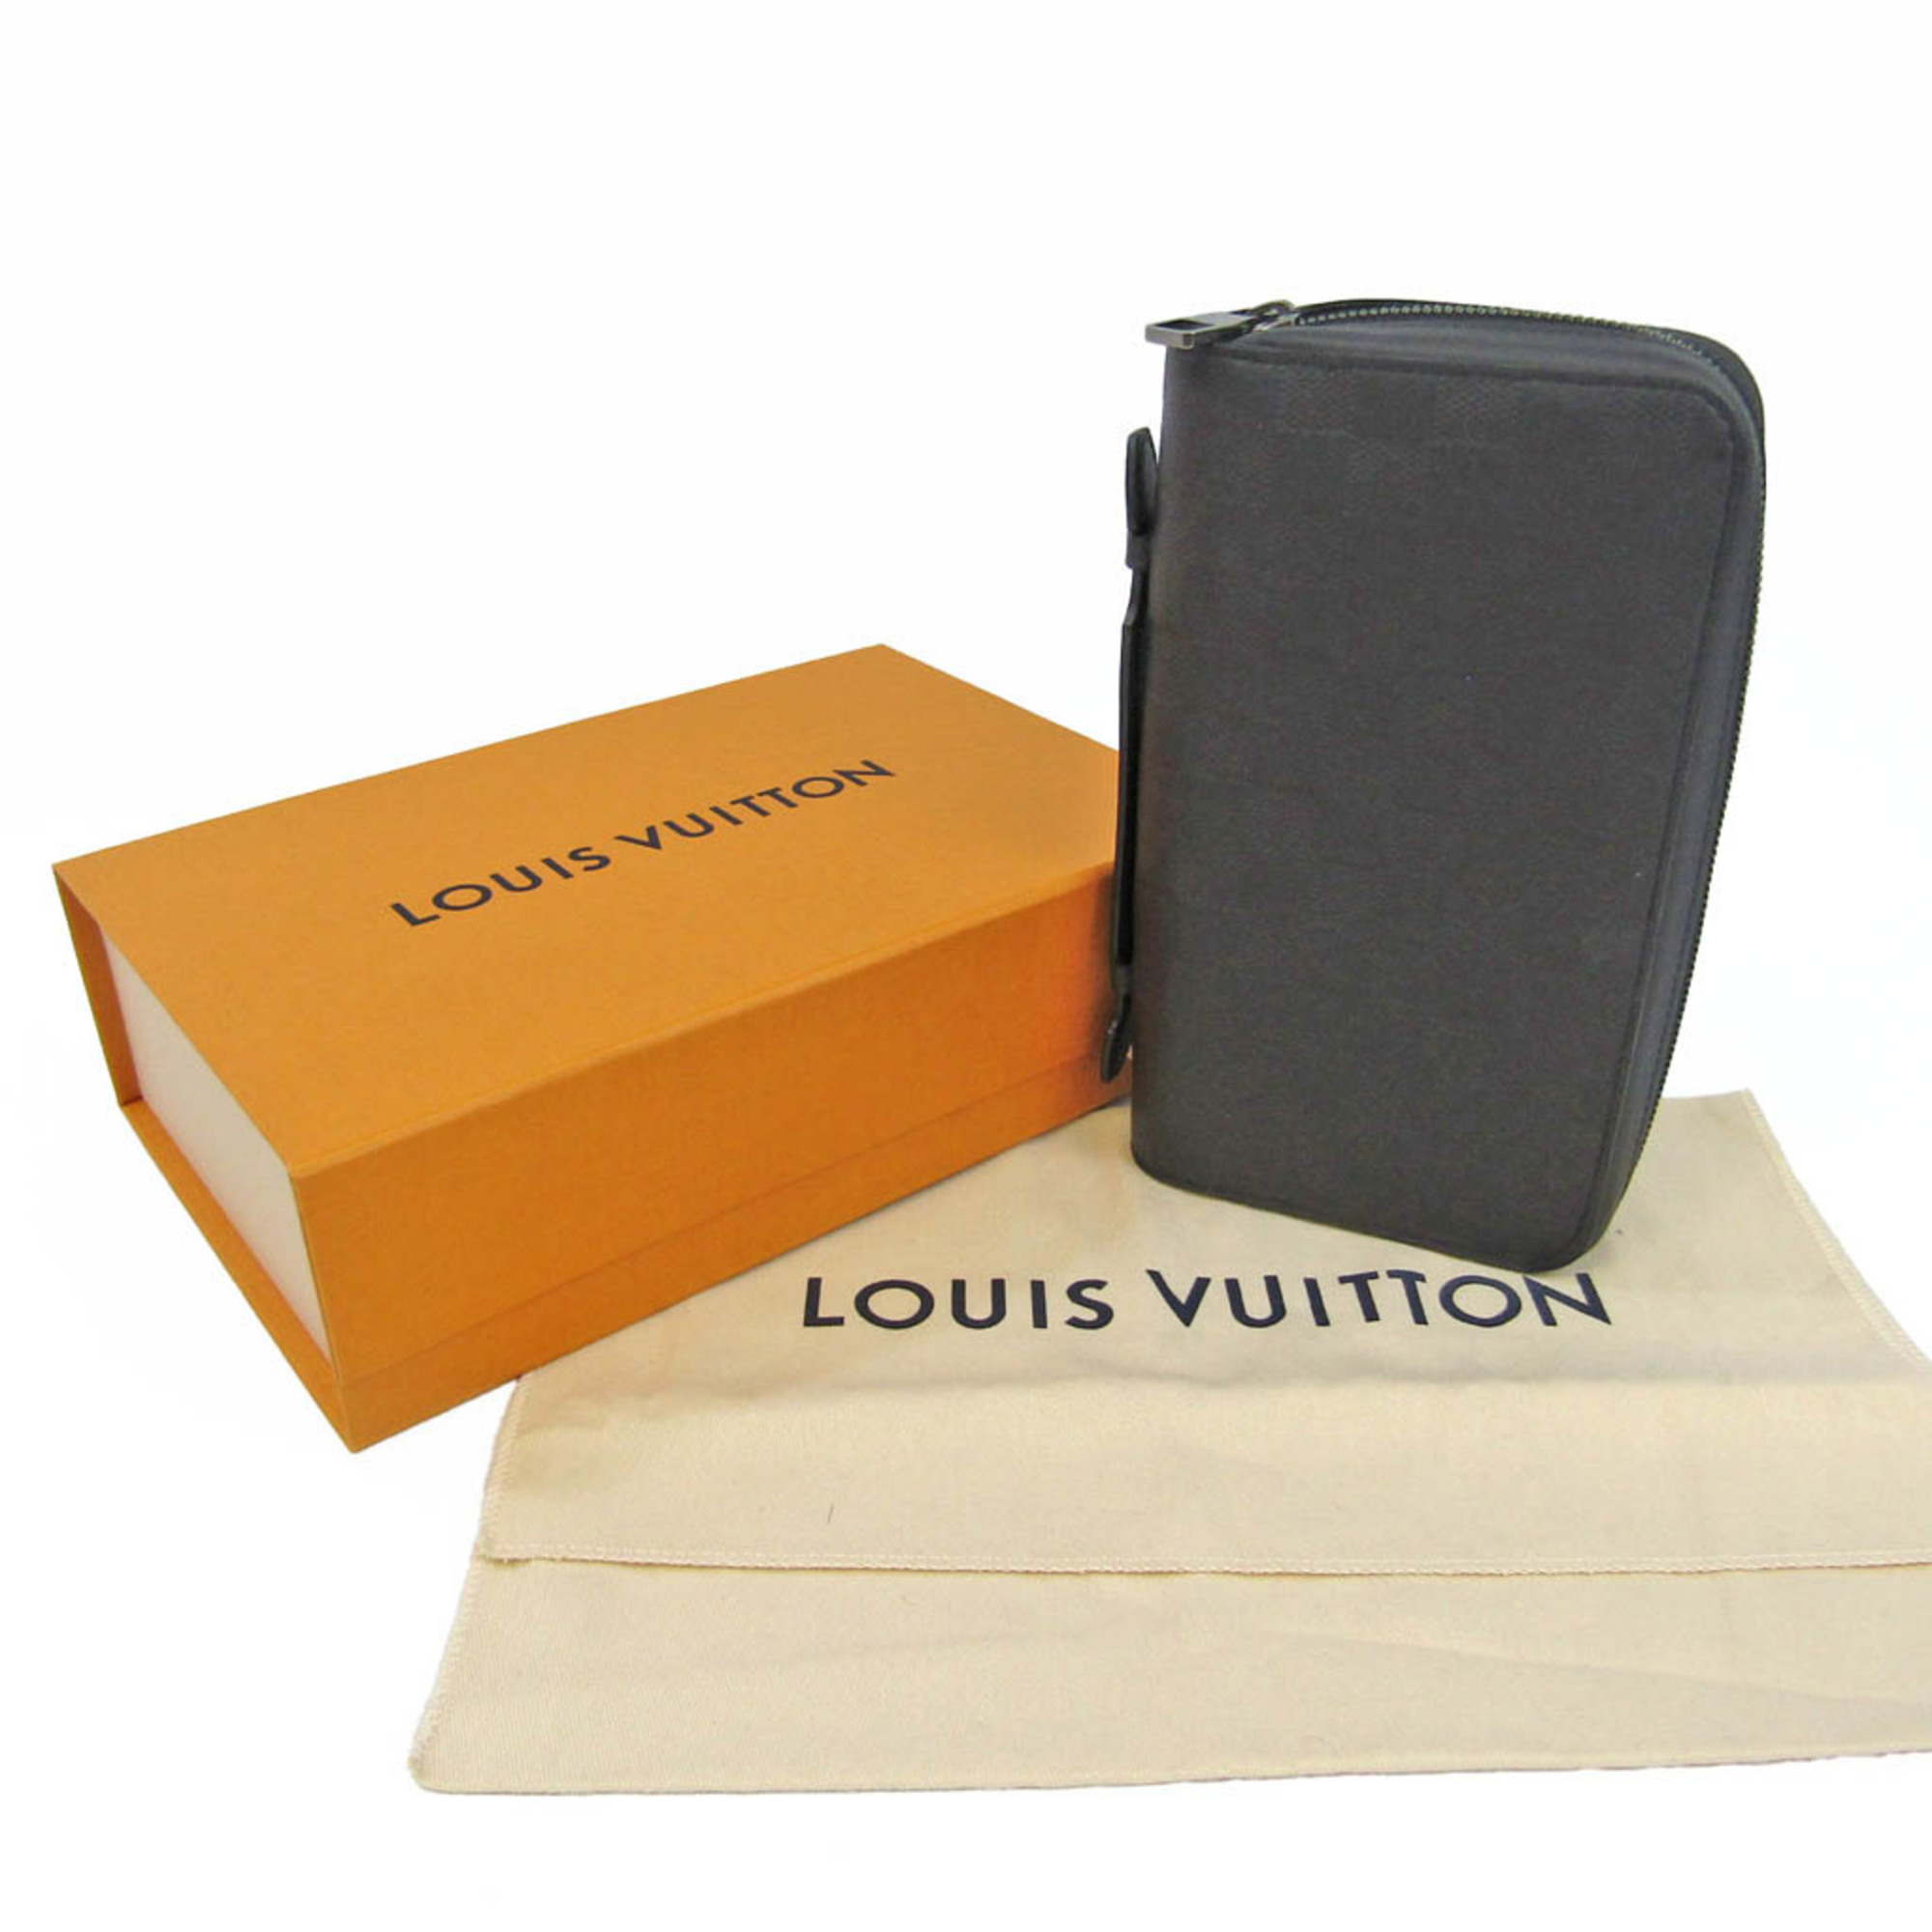 ルイ・ヴィトン (Louis Vuitton) ダミエアンフィニ ジッピー XL N61254